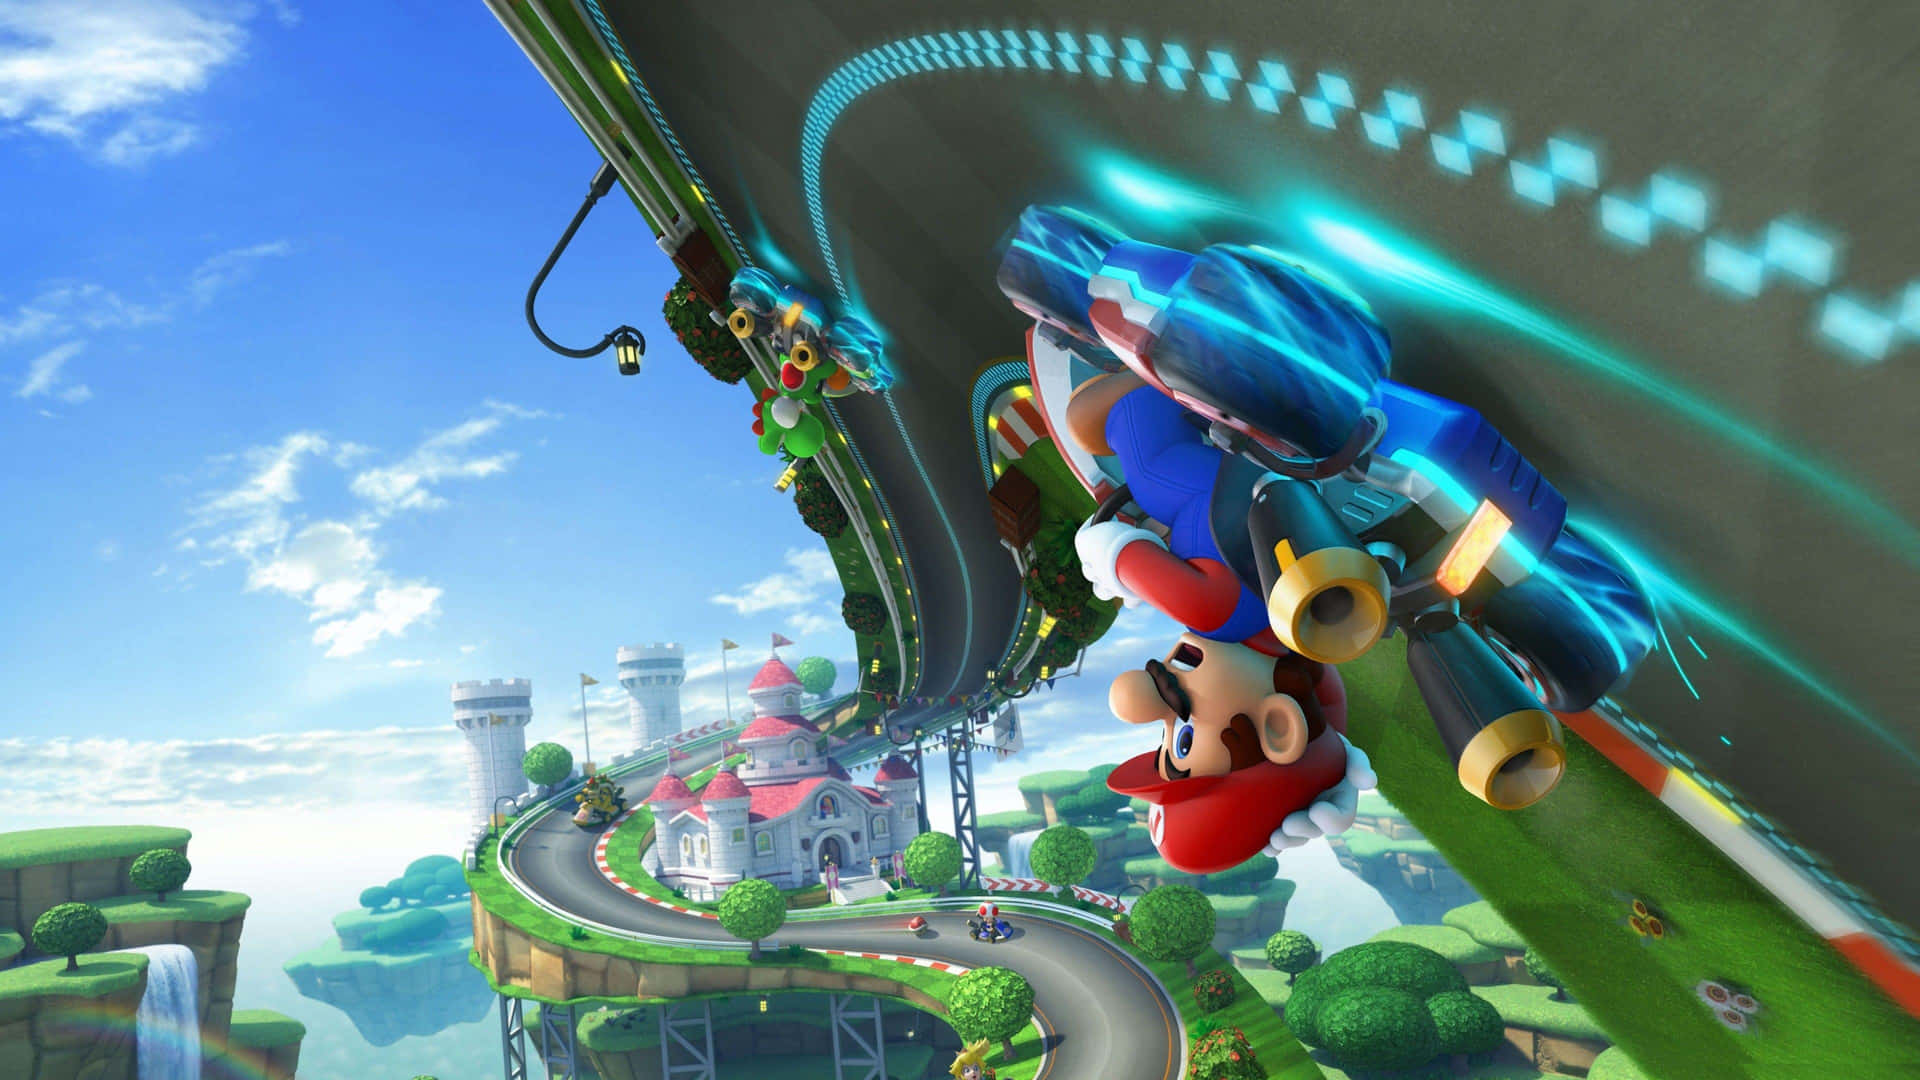 Exciting Mario Kart 8 Deluxe Race Scene Wallpaper